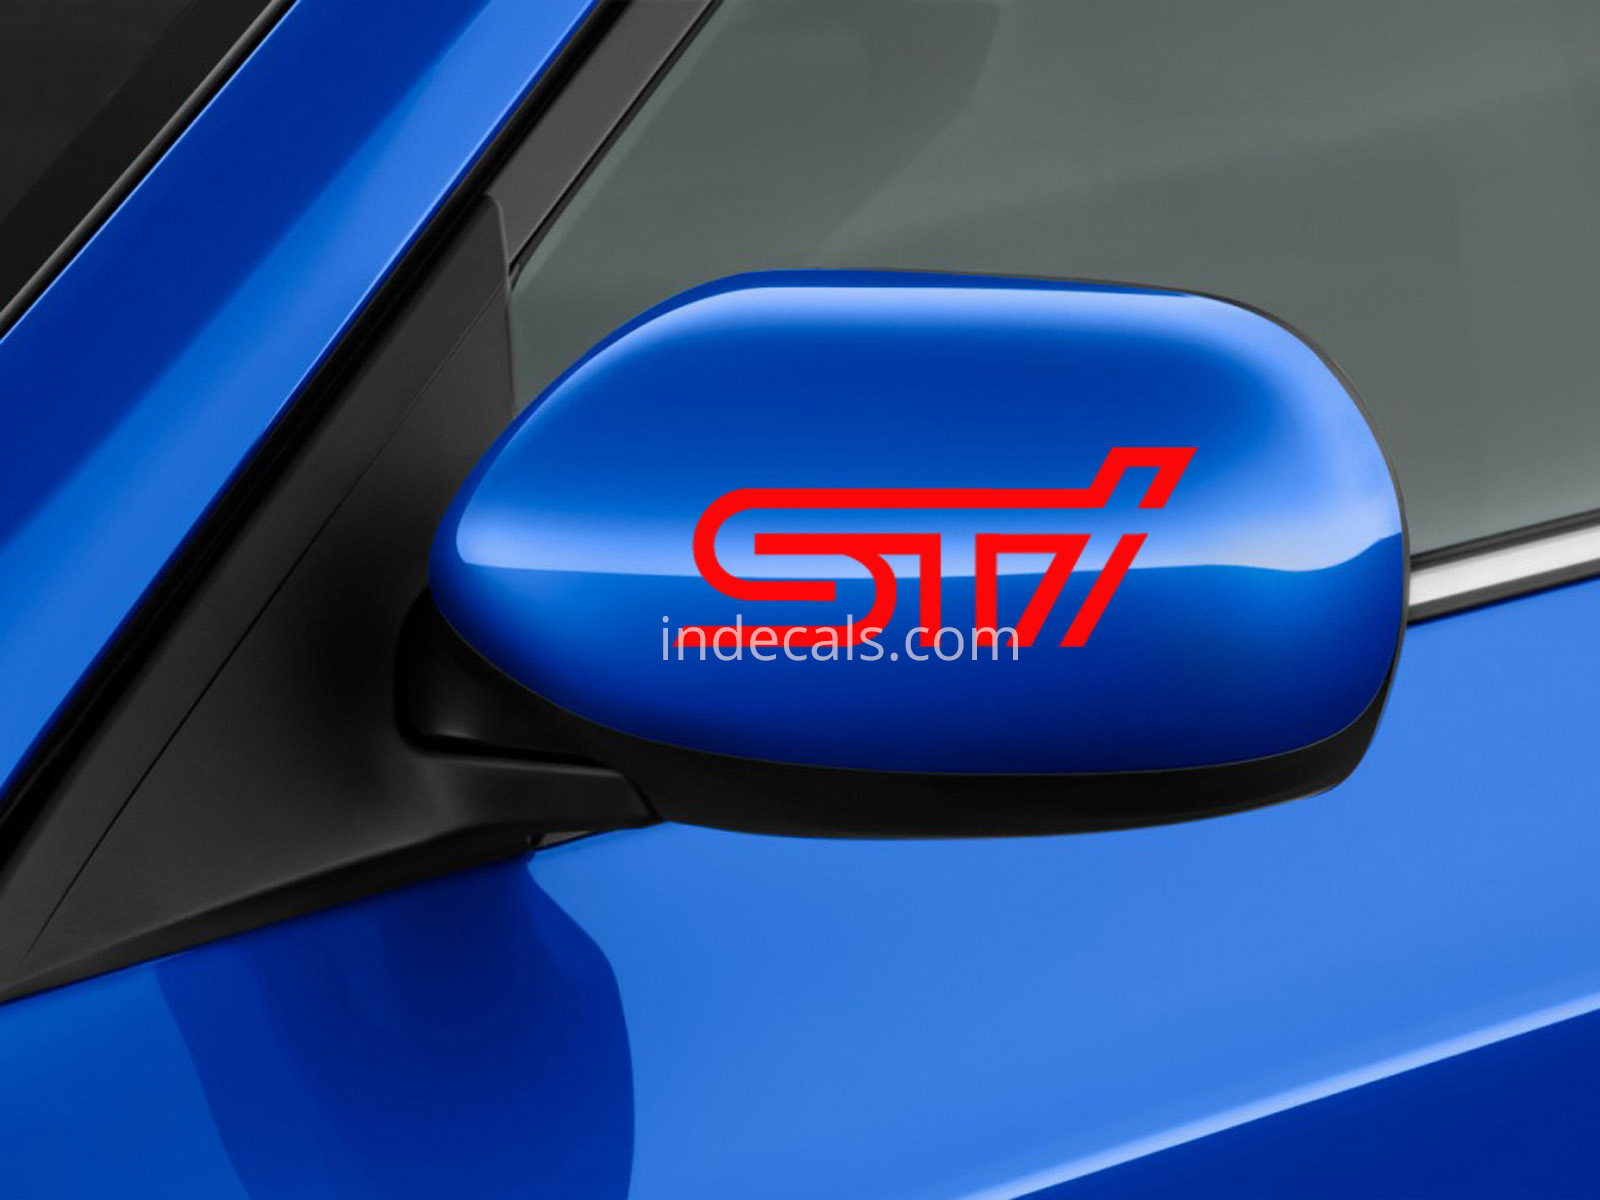 2 x Subaru STI stickers for Mirror Case - Red